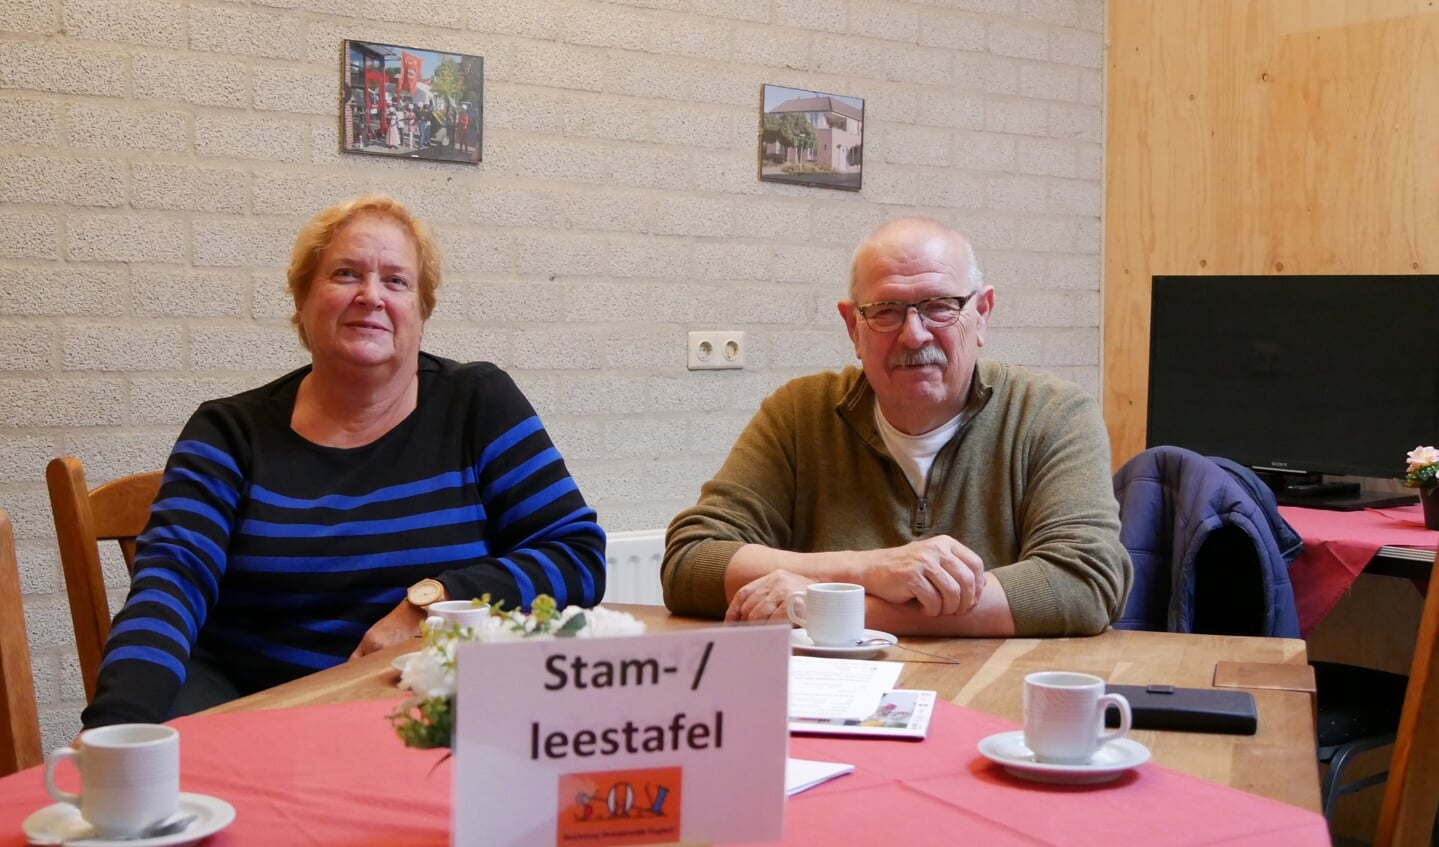 Mirjam Klaassen en Henk van Wanrooij aan de nieuwe Stam- / leestafel.